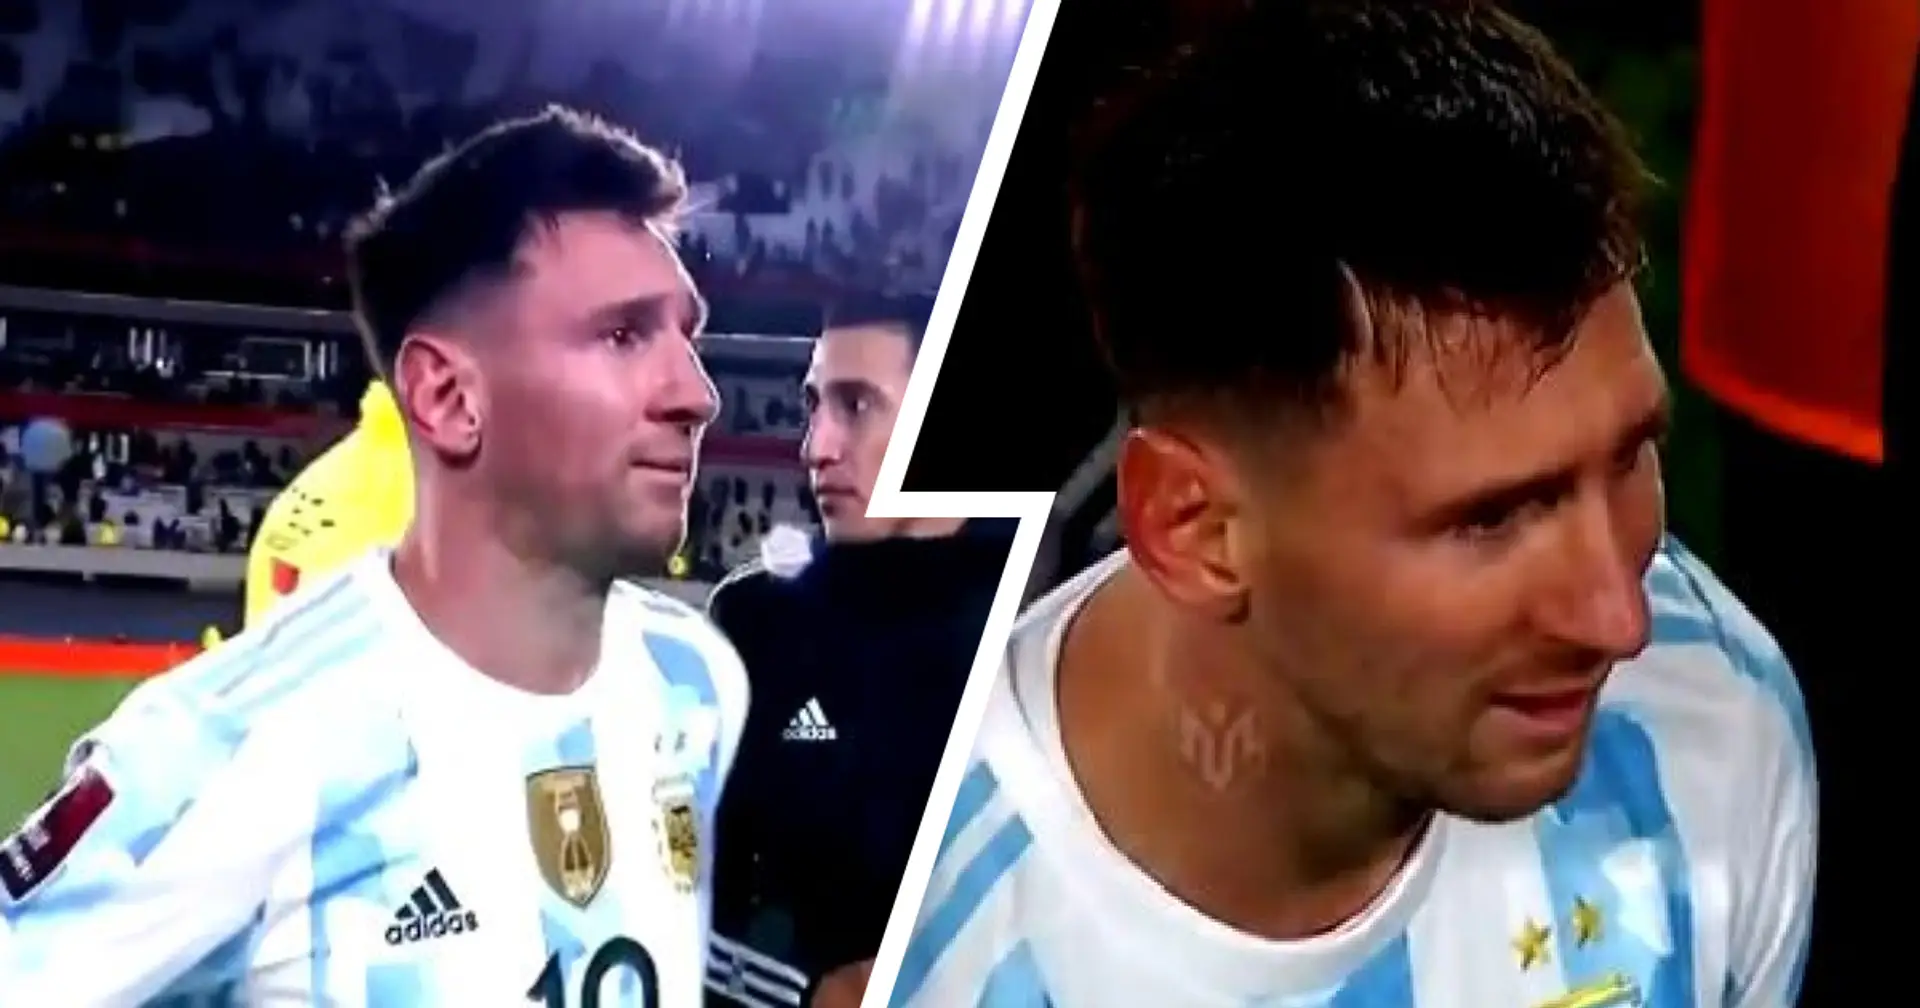 Imágenes emocionales de Messi llorando de alegría durante las celebraciones de Argentina de ganar la Copa de América se vuelven virales